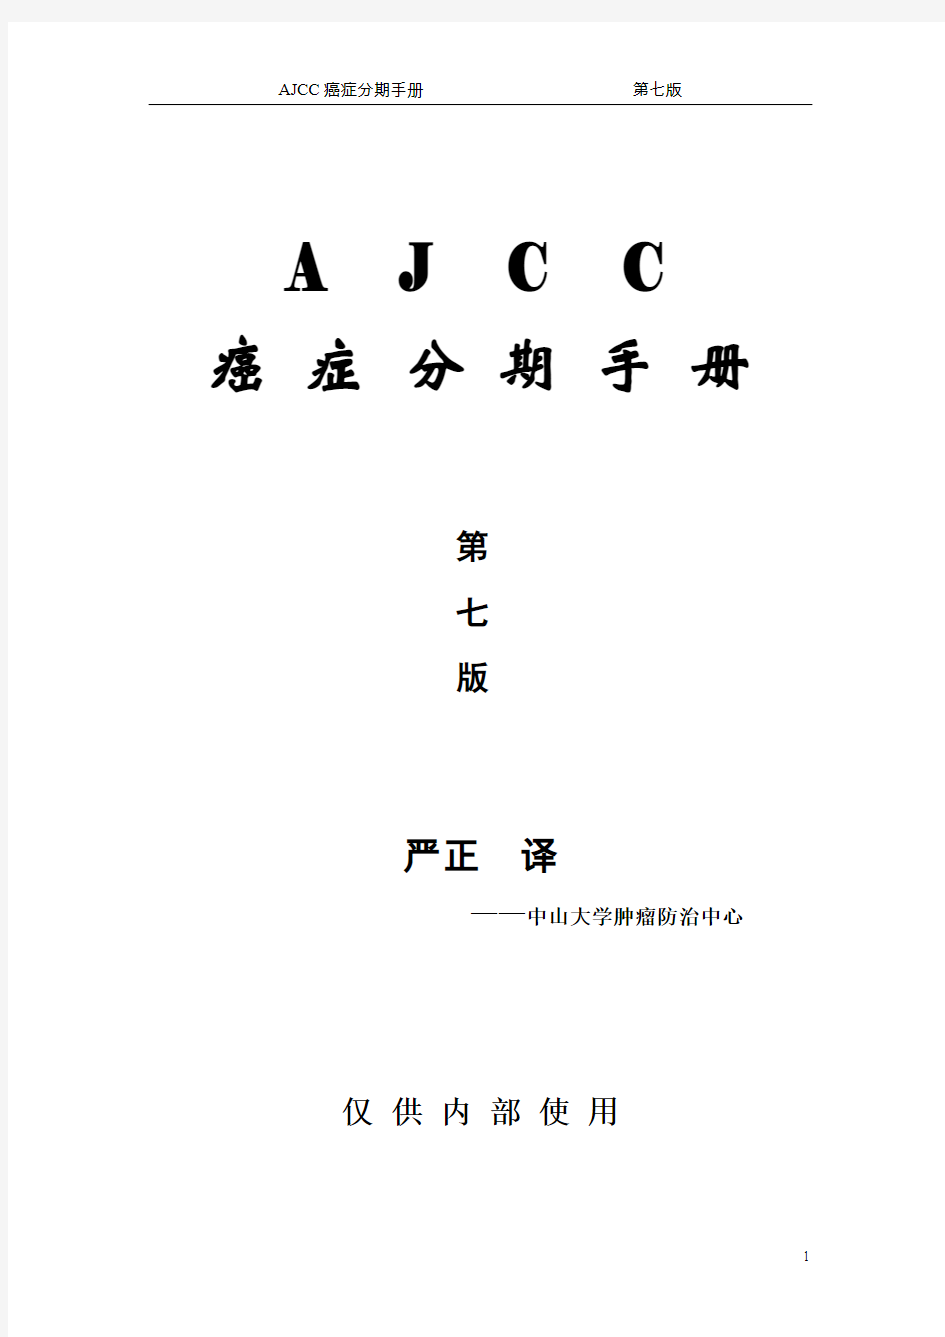 AJCC癌症分期手册第七版 中文版 